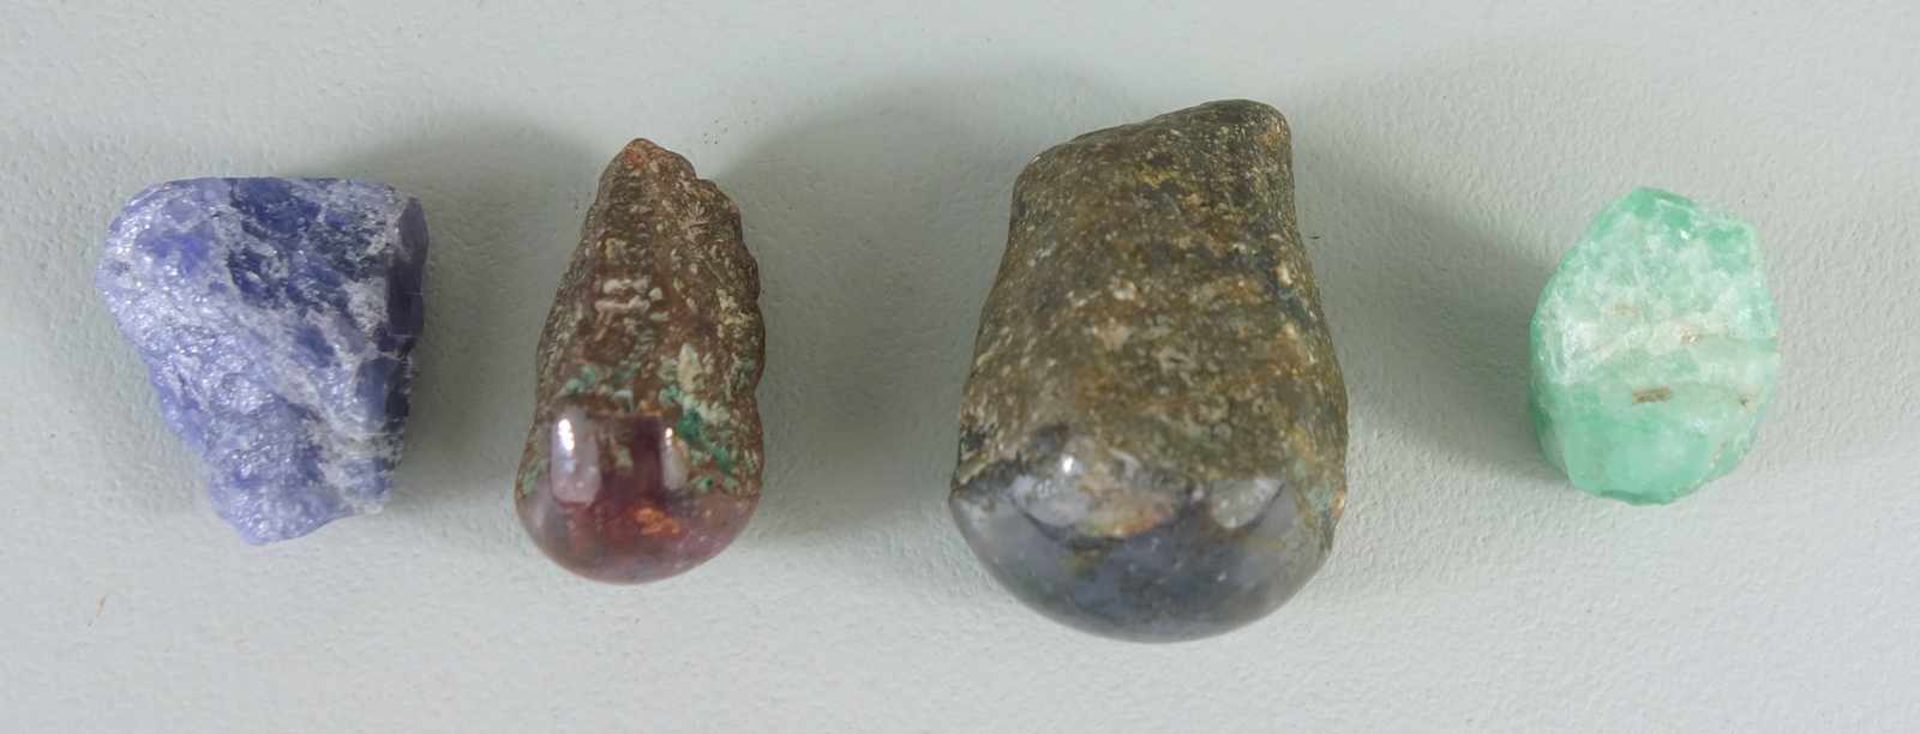 4 Mineralien: Labradorit, HBT 2*4*2,5cm, Gew. 55g, einseitig halbrund poliert; wohl Sternrubin,